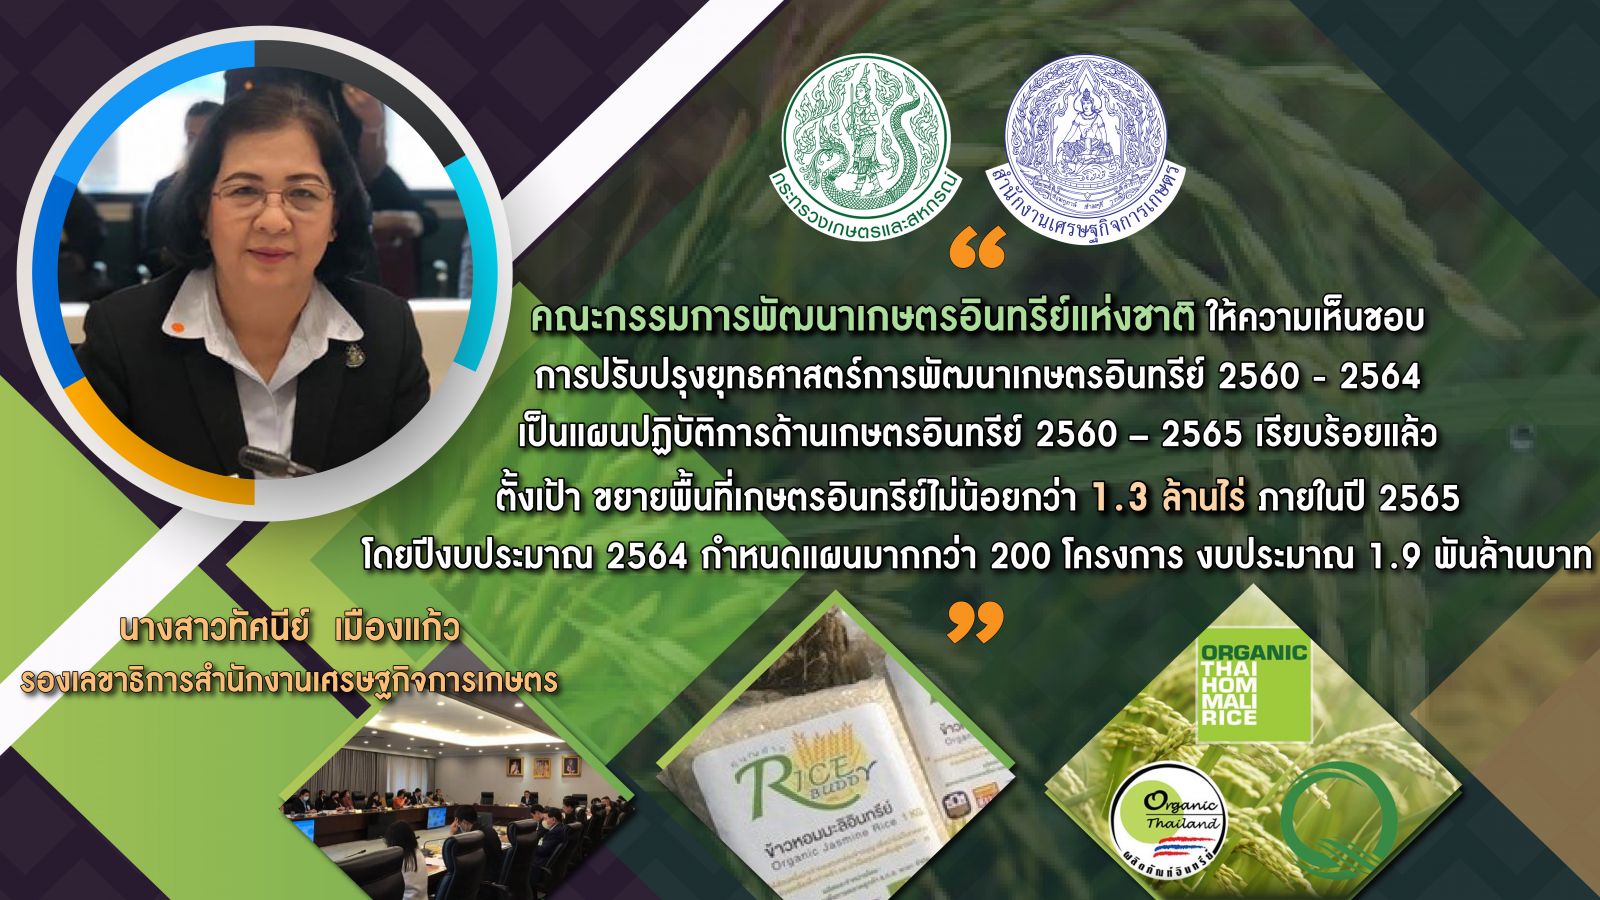 ผลักดันเกษตรอินทรีย์ไทย ยืนหนึ่งอาเซียน  เดินหน้าแผนปฏิบัติการขยายพื้นที่เกษตรอินทรีย์ 1.3 ล้านไร่ ในปี 65